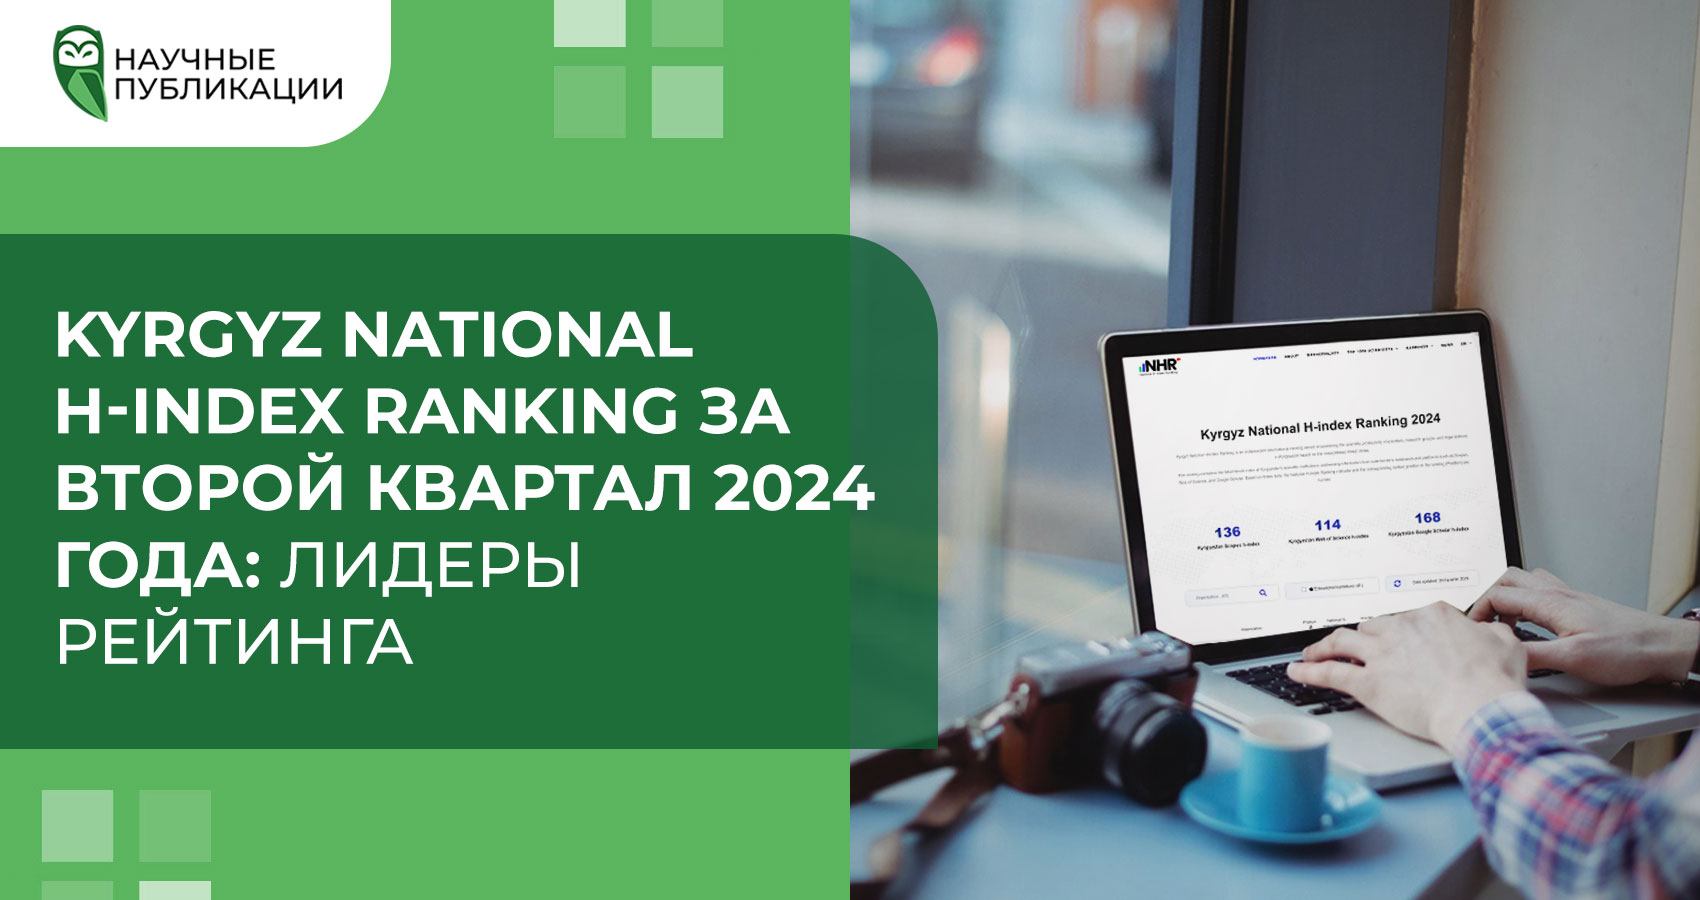 Kyrgyz National H-index Ranking за второй квартал 2024 года: лидеры рейтинга